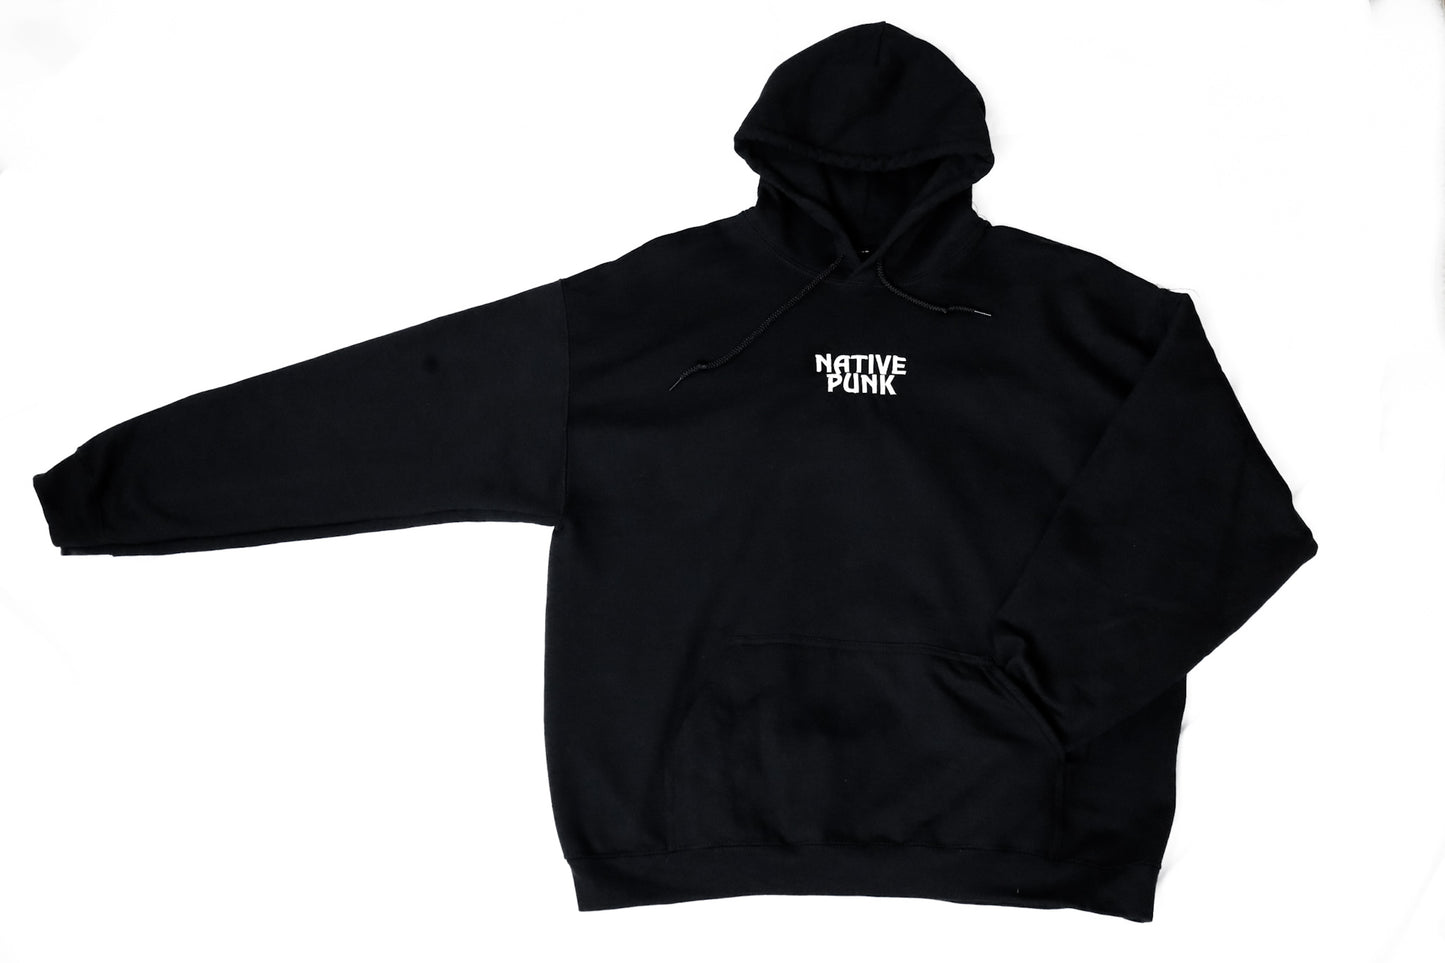 NATIVE PUNK - standard black hoodie